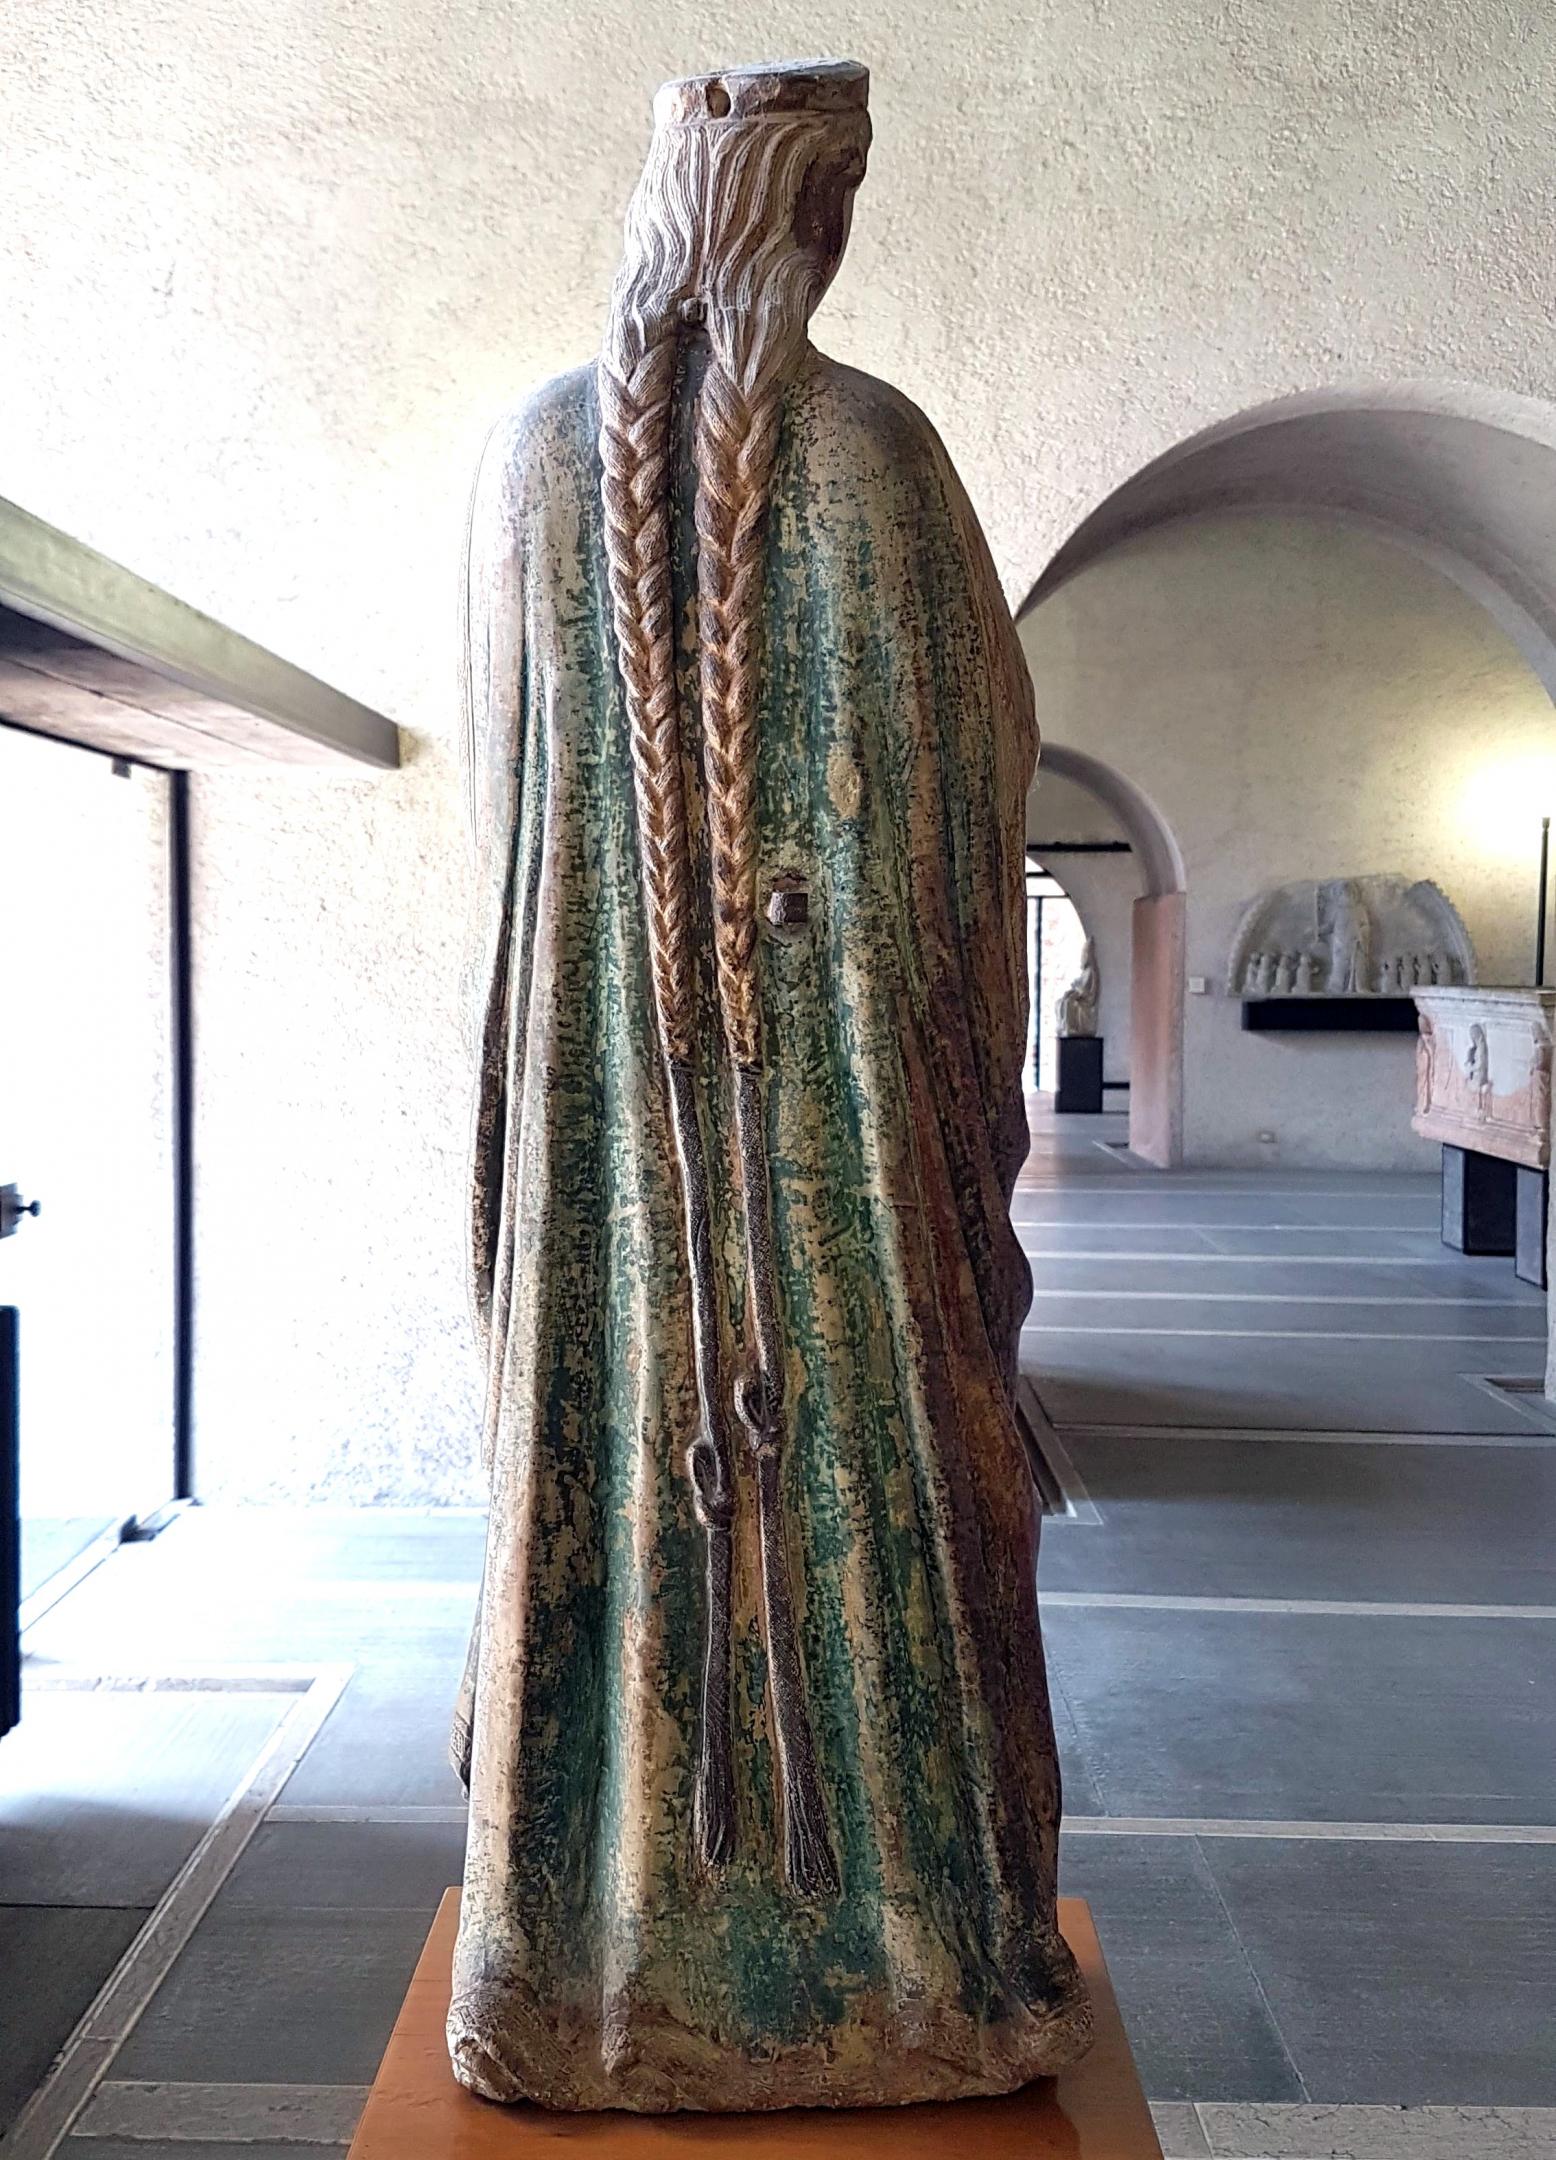 Maestro di Sant'Anastasia (1325–1350), Heilige Liberata, Verona, Chiesa dei Santi Siro e Libera, jetzt Verona, Museo di Castelvecchio, Saal 3, 1. Hälfte 14. Jhd., Bild 5/6